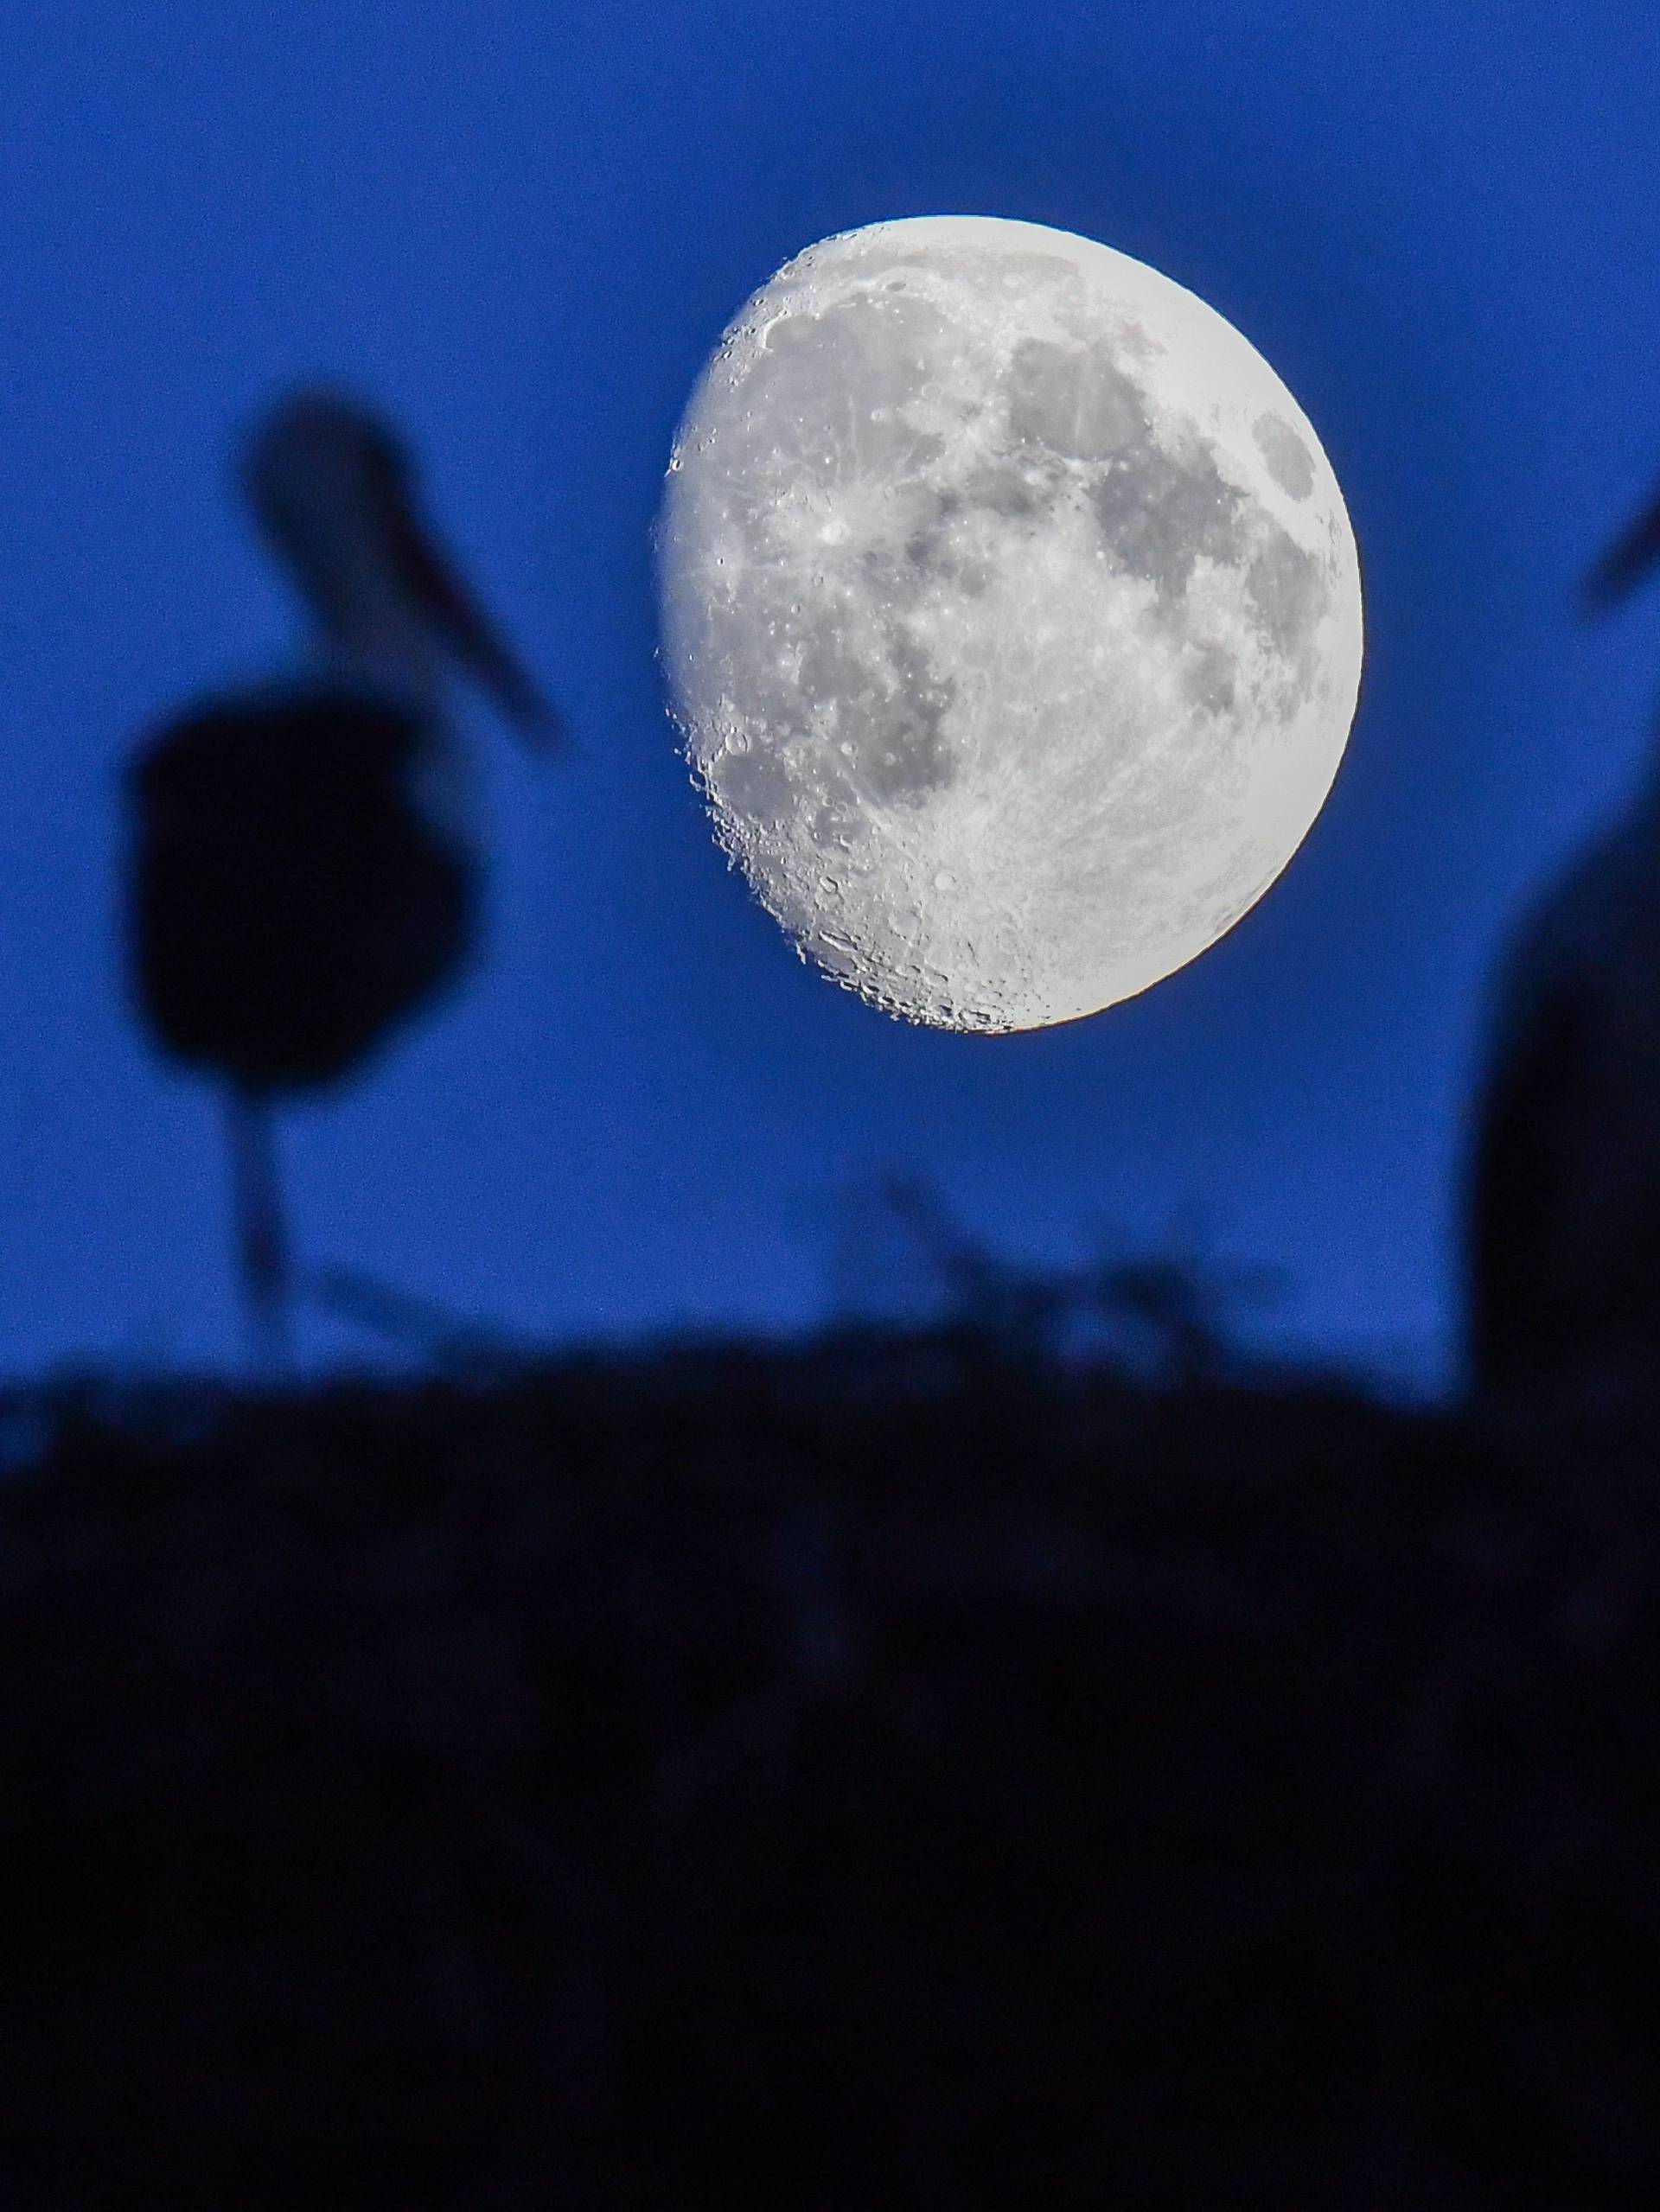 Stork nest in the moonlight